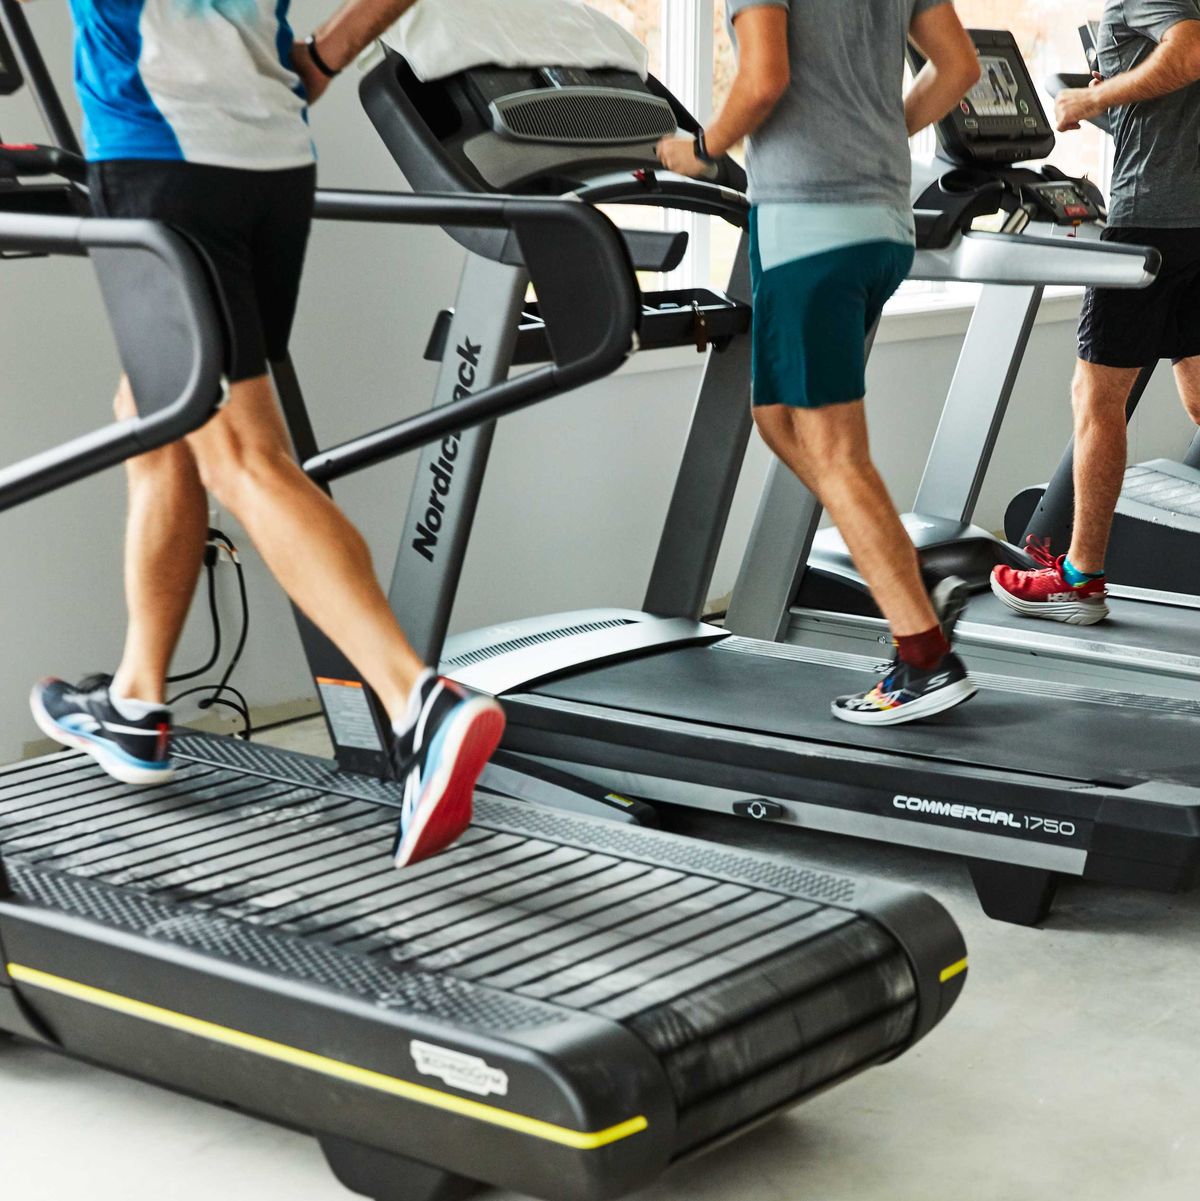 runners on treadmills